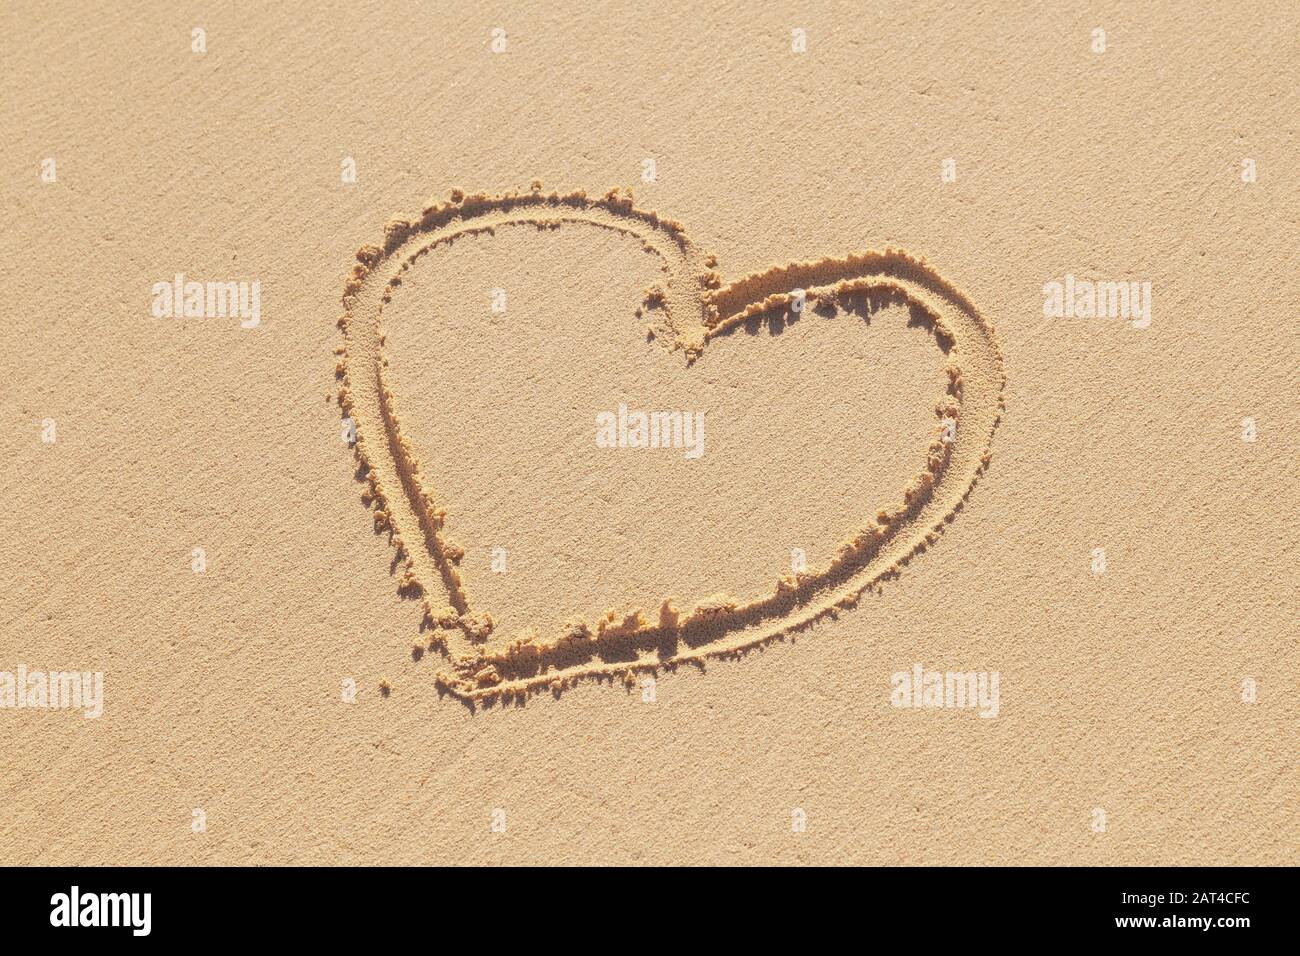 Handgezeichnetes Herzschild ist auf einem Küstensand, eine romantische Weihnachtsmetapher Stockfoto